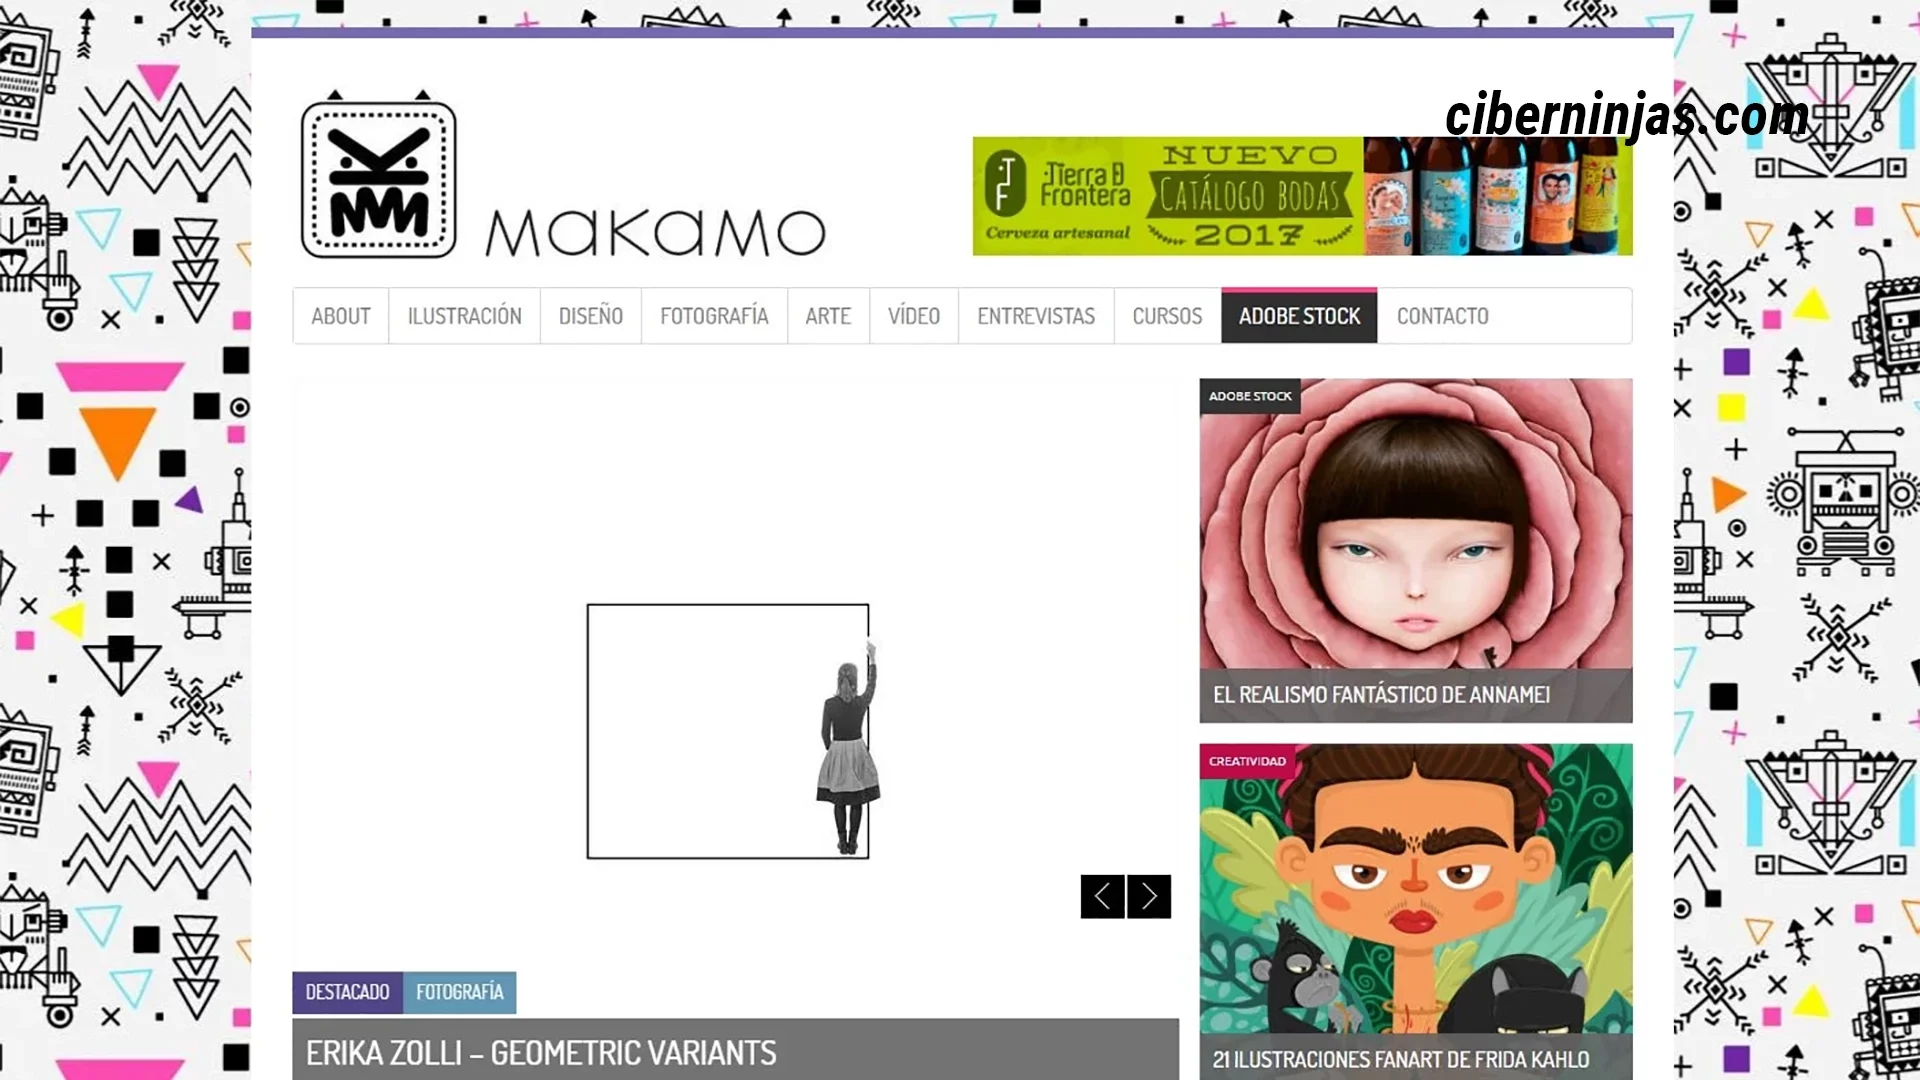 Makamo: Uno de los mejores blogs de diseño en español